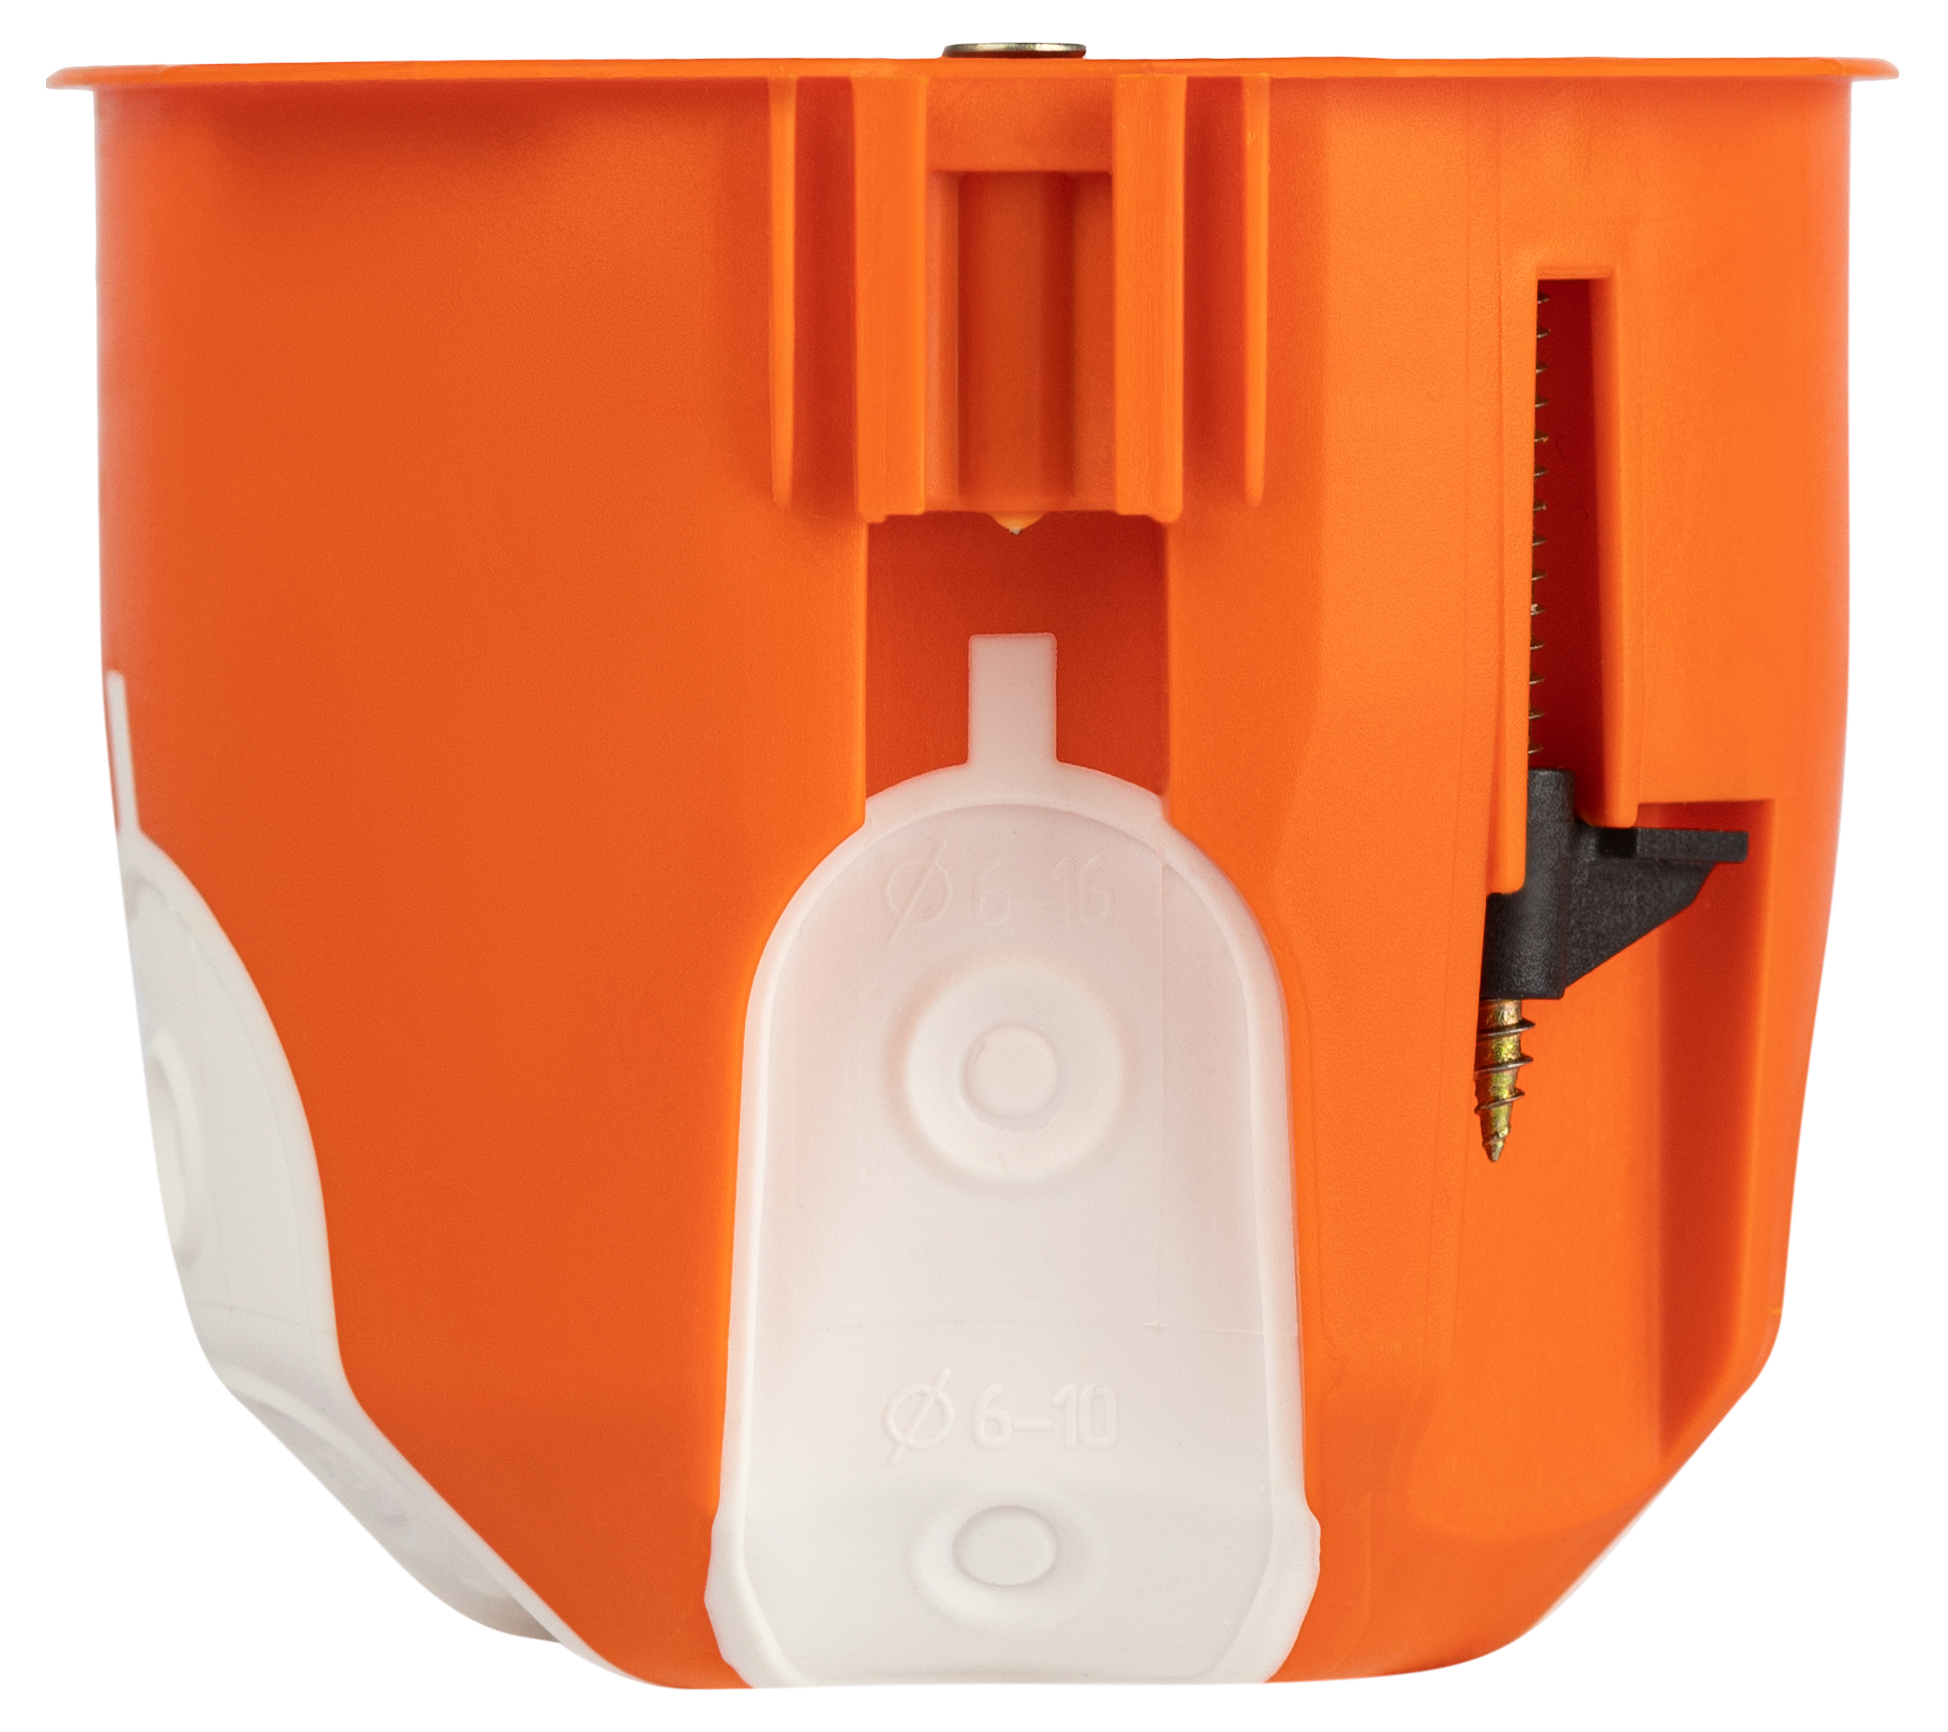 Коробка установочная ЭРА KUU-71-65-unibox оранжевая универсальная 71х65мм UniBox для твердых и полых стен саморезы IP30